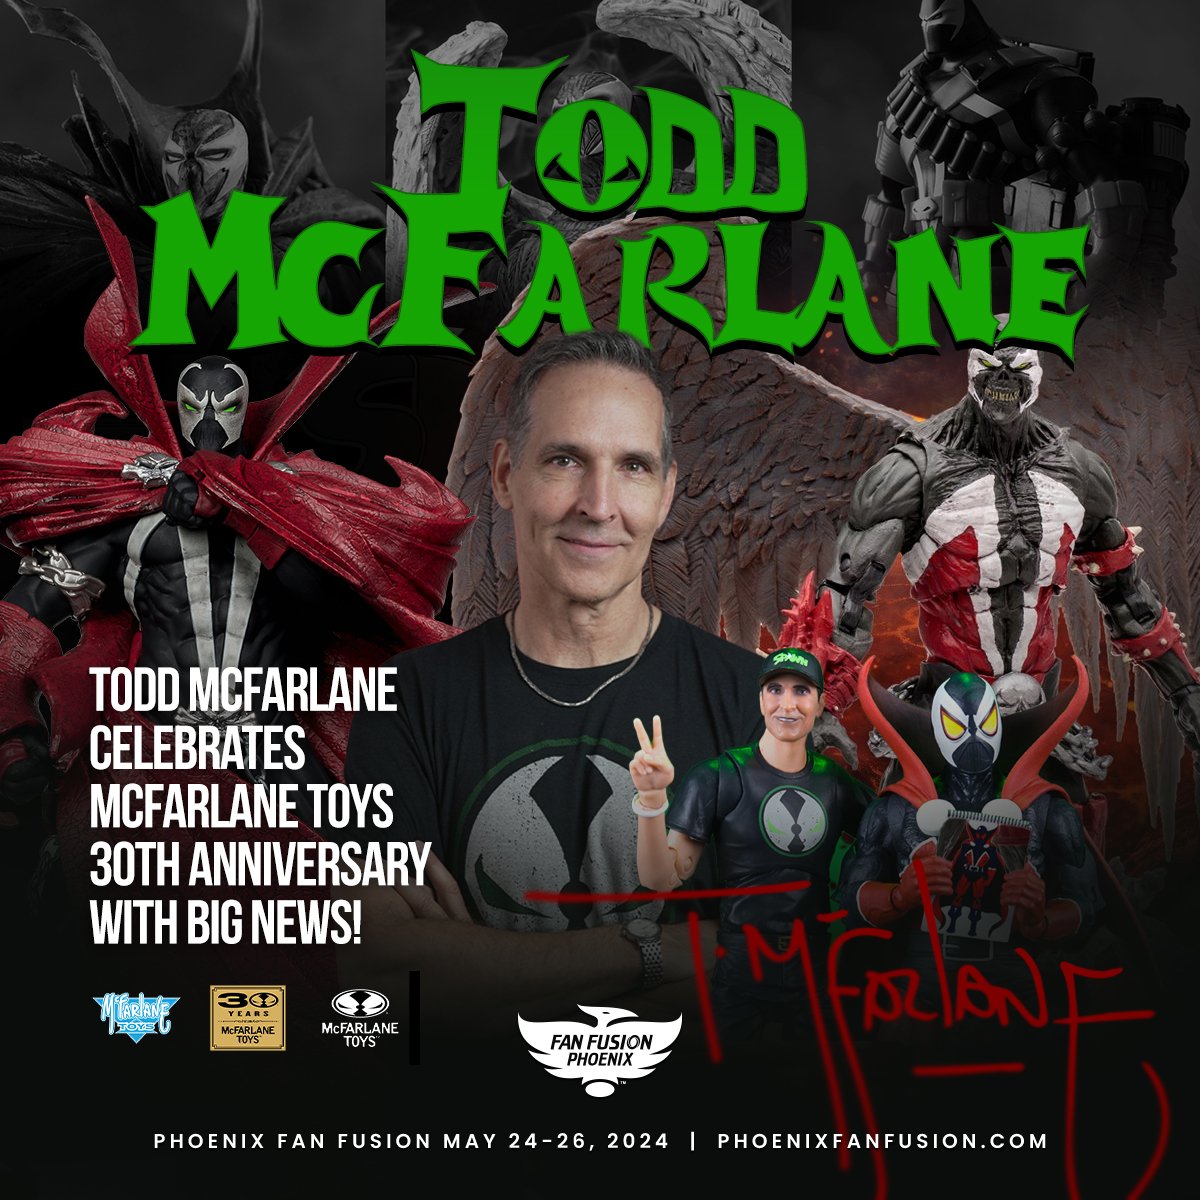 🚨⛽️ Todd McFarlane vai anunciar algumas NOVIDADES sobre o filme, os quadrinhos, brinquedos e muito mais do #SPAWN na PHX Fan Fusion que acontece entre os dias 24 a 26 de Maio nos EUA! 

#IMAGECOMICSBRASIL #TODDMCFARLANE #PHOENIXFANFUSION #SPAWN #SPAWNSUNIVERSE #IMAGECOMICS